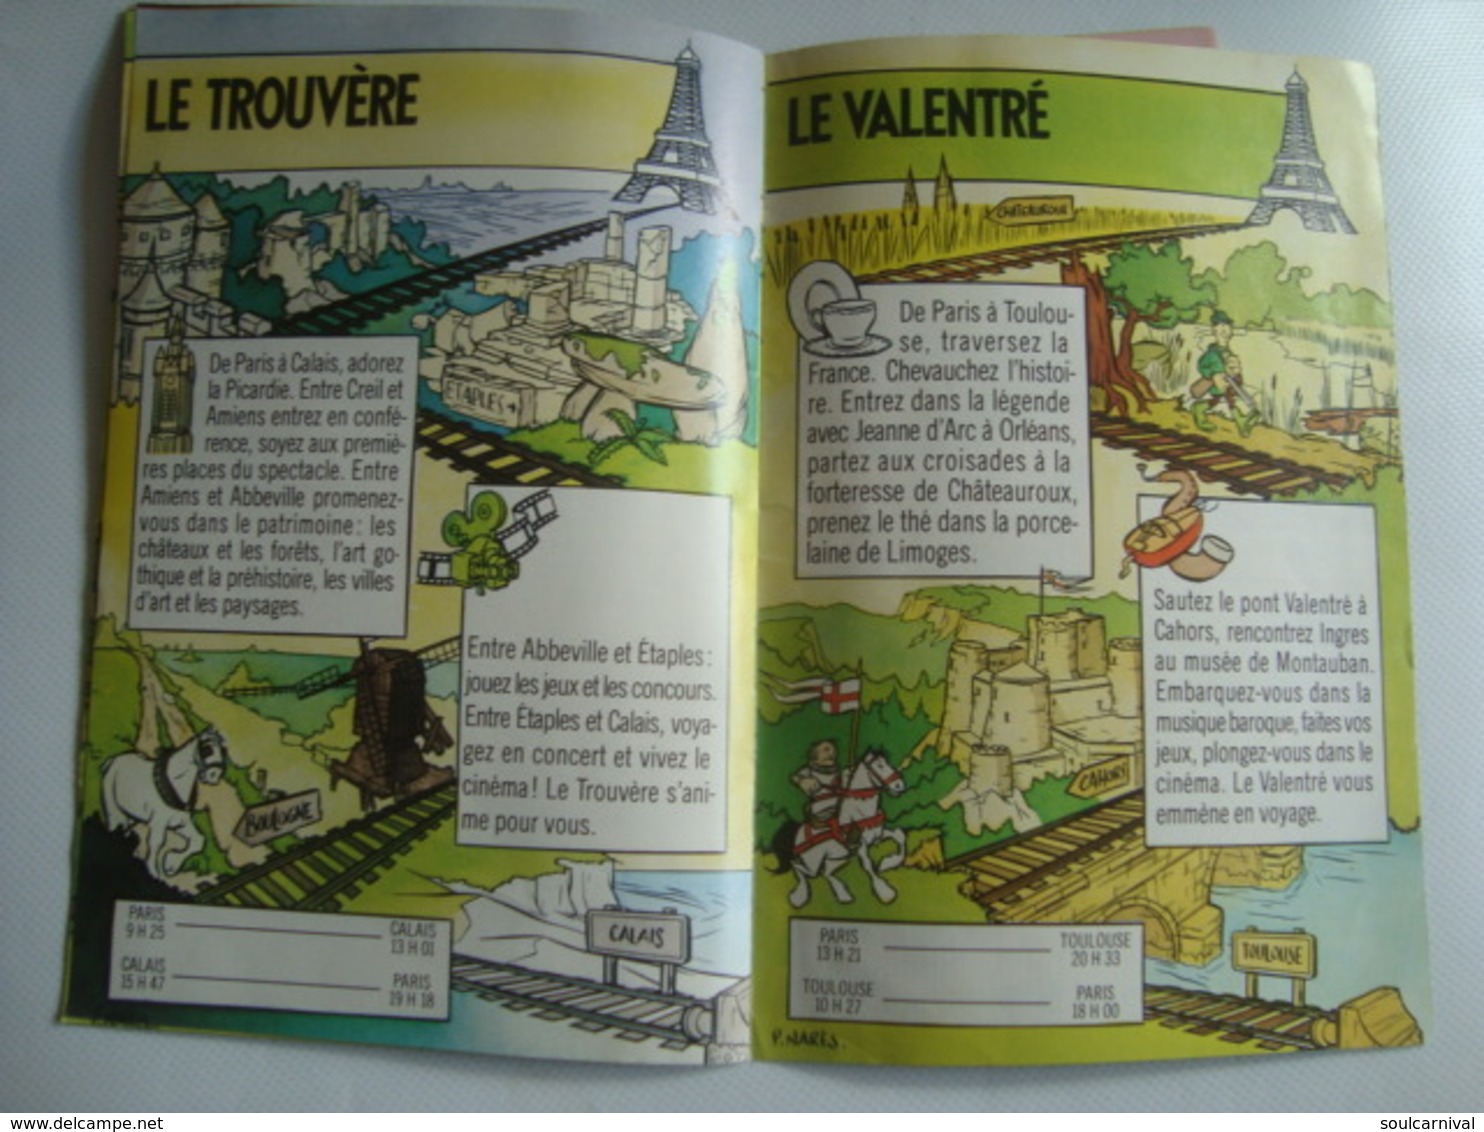 SCNF. LOISIRAIL. LES TRAINS ANIMÉS. LE VERT-GALANT PARLE DU PAYS! - FRANCE, 1989 APROX.  ILLUSTRATION DE P. NARÈS. - Railway